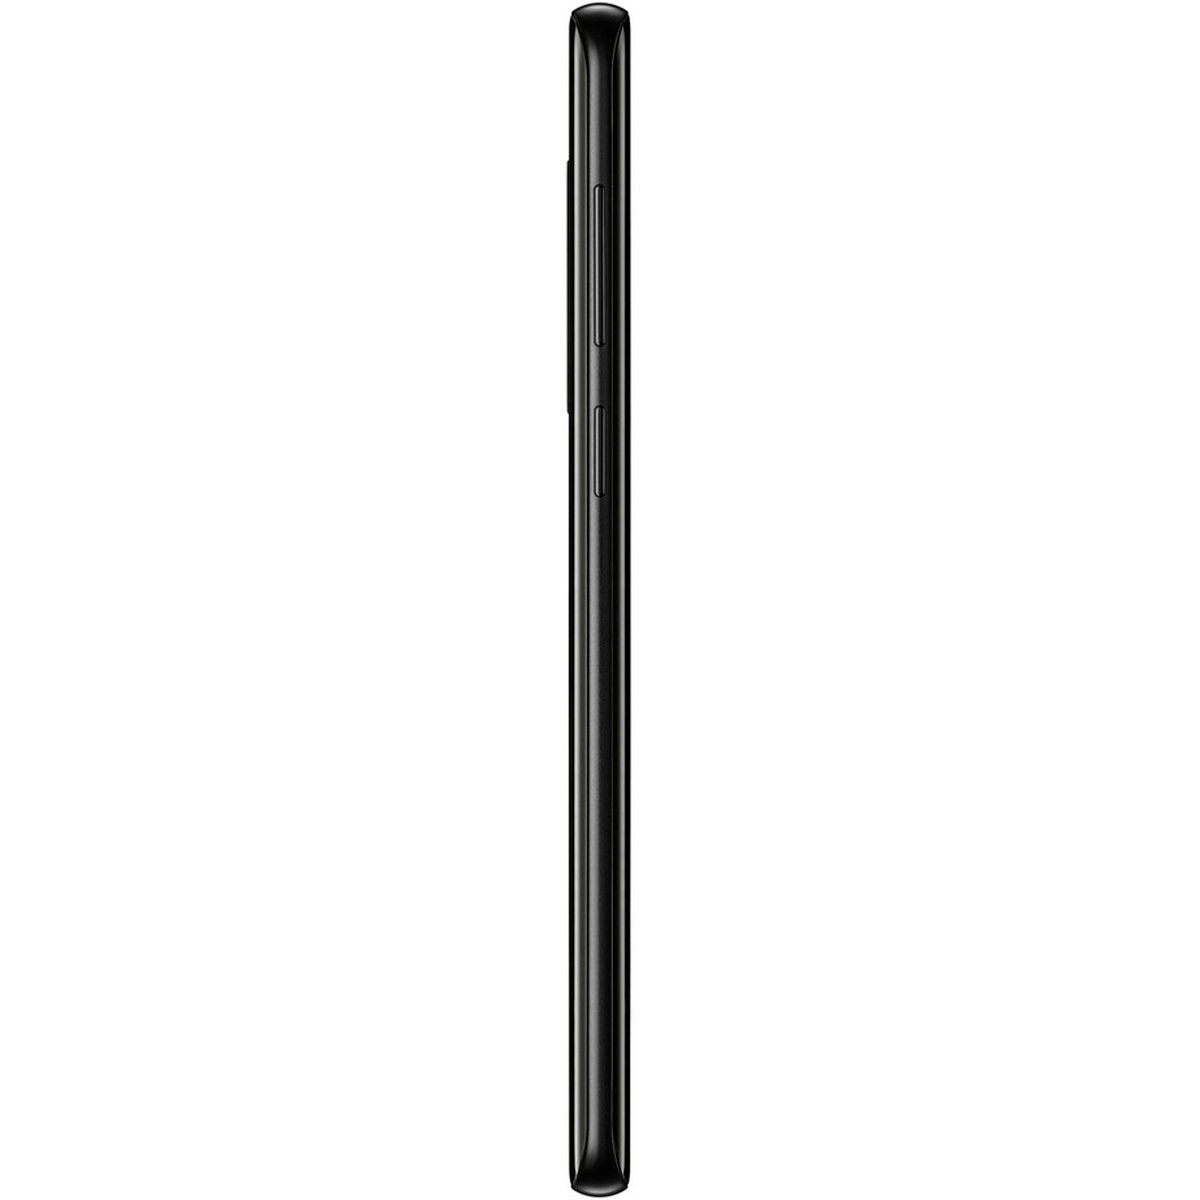 Samsung Galaxy S9+ SM-G965FZKDXSG 64 GB Midnight Black